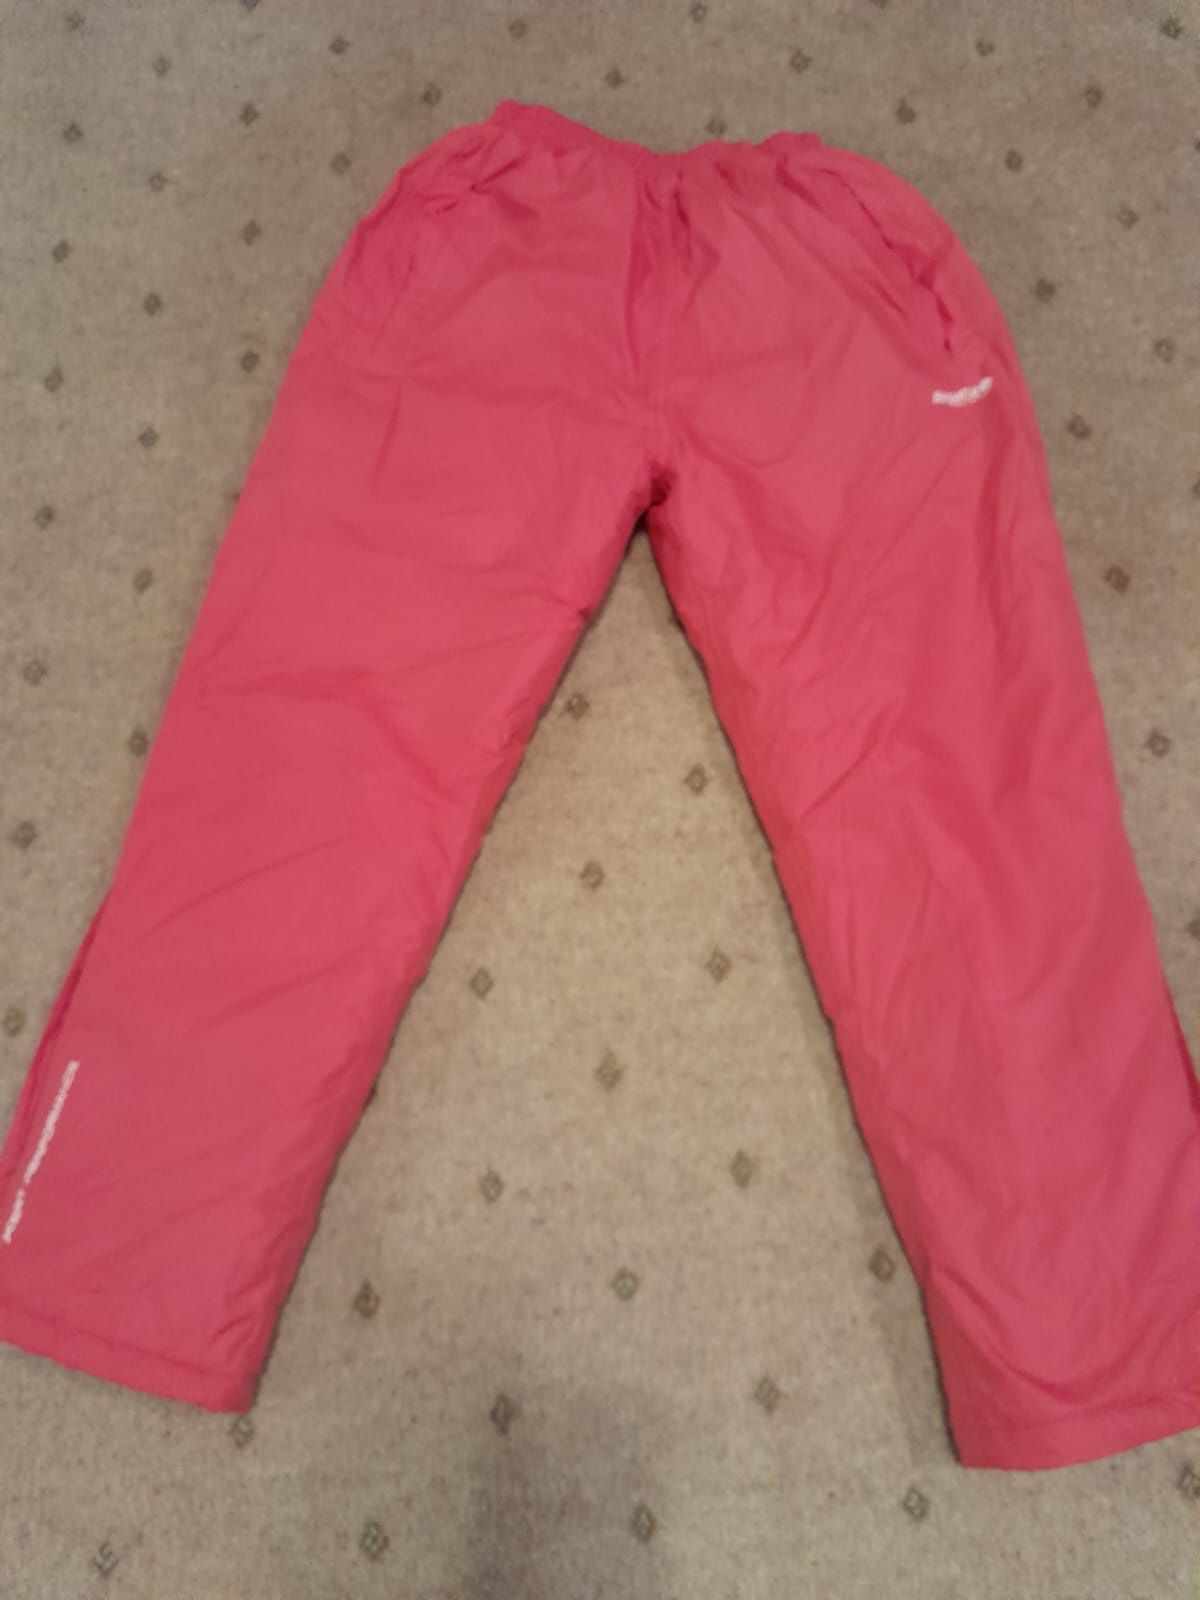 Spodnie narciarskie dla dziewczynki Regatta, różowe - 152 cm, obszerne